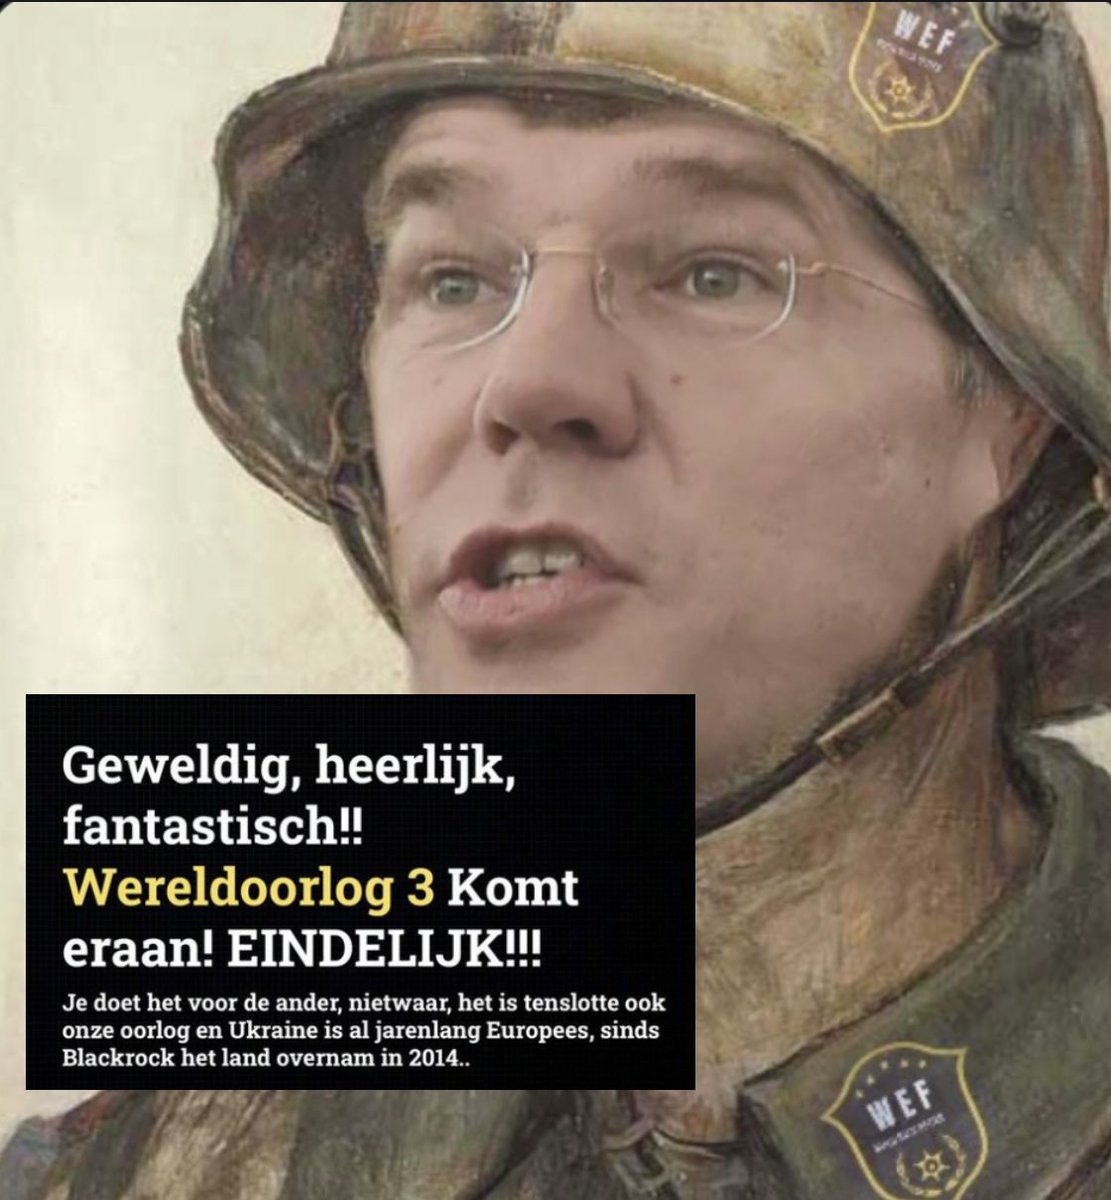 #Rutte : 'HET IS TENSLOTTE OOK MIJN OORLOG' : #NATO #WW3 #EU: #CrimesAgainstHumanity #vandaaginside #NPO #RTL #sbs6 #NOS #Op1 #eenvandaag #Nieuwsuur #Buitenhof #NRC #Ad #Trouw #Volkskrant #Beau #Jinek #Op1 #wetenschappers #tweedekamer #BBB #NSC #FVD #PVV #groenlinkspvda #CDA #D66…